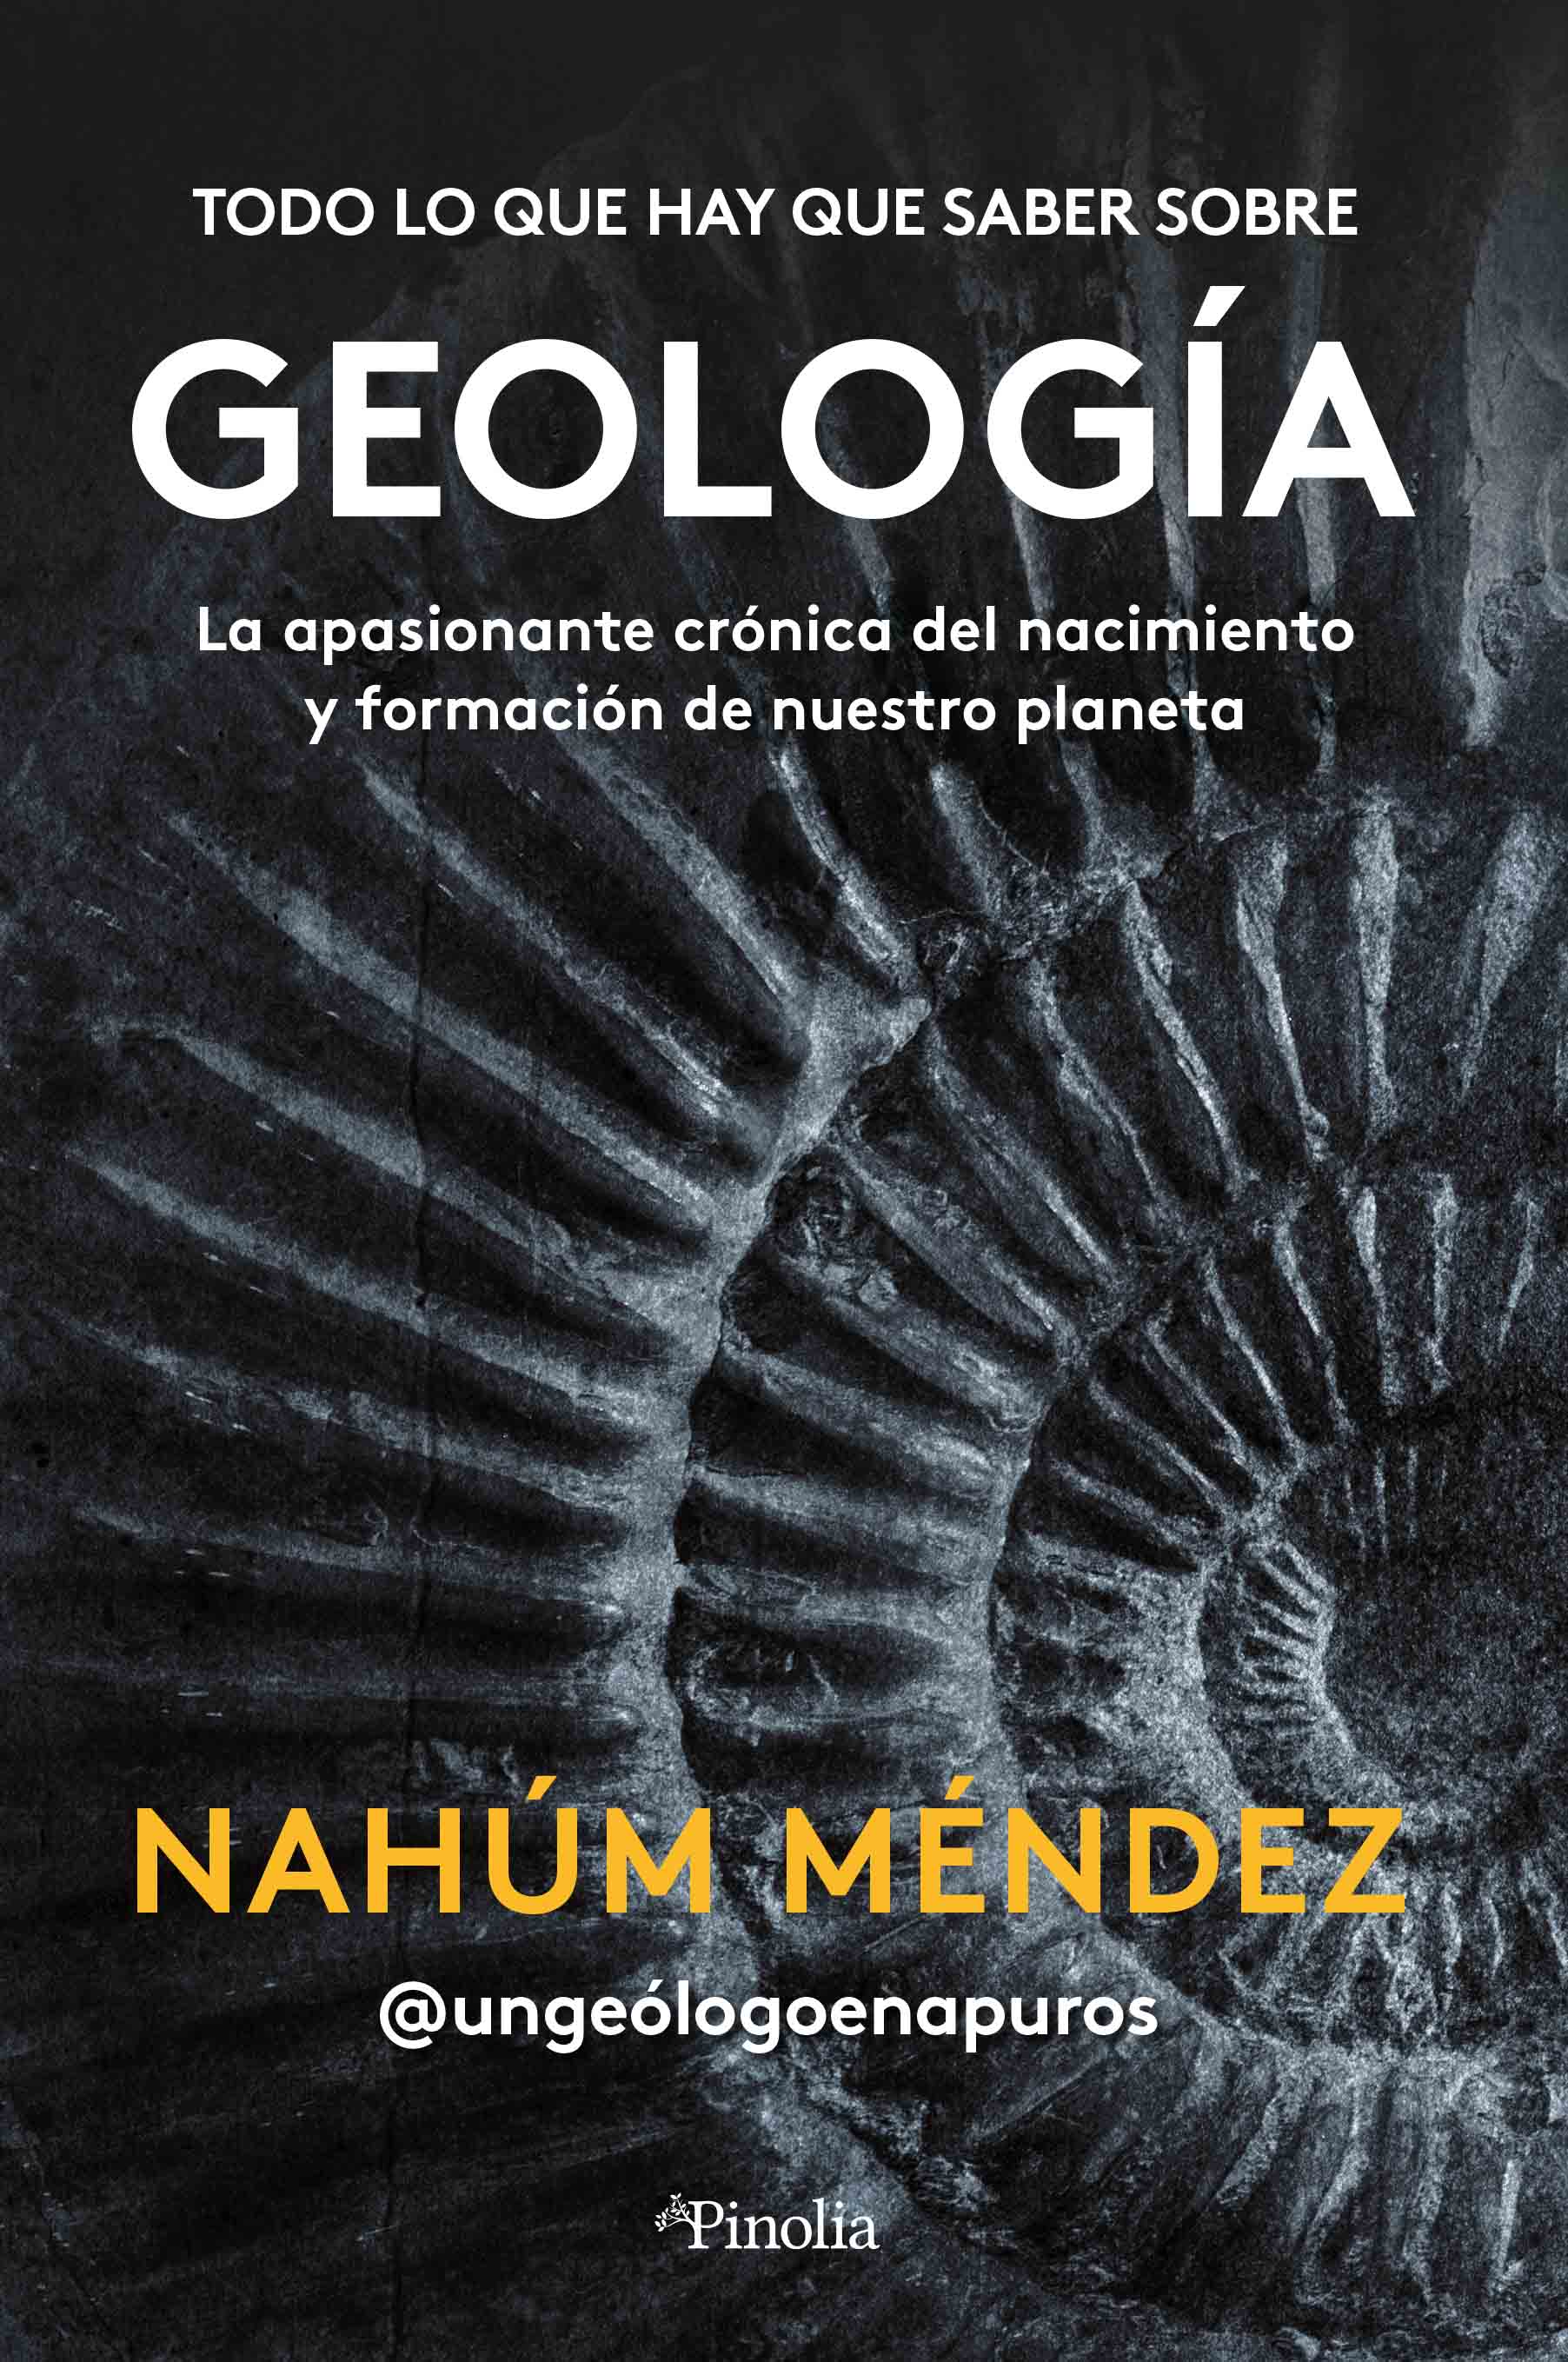 Todo lo que hay que saber sobre geología - La tienda de libros